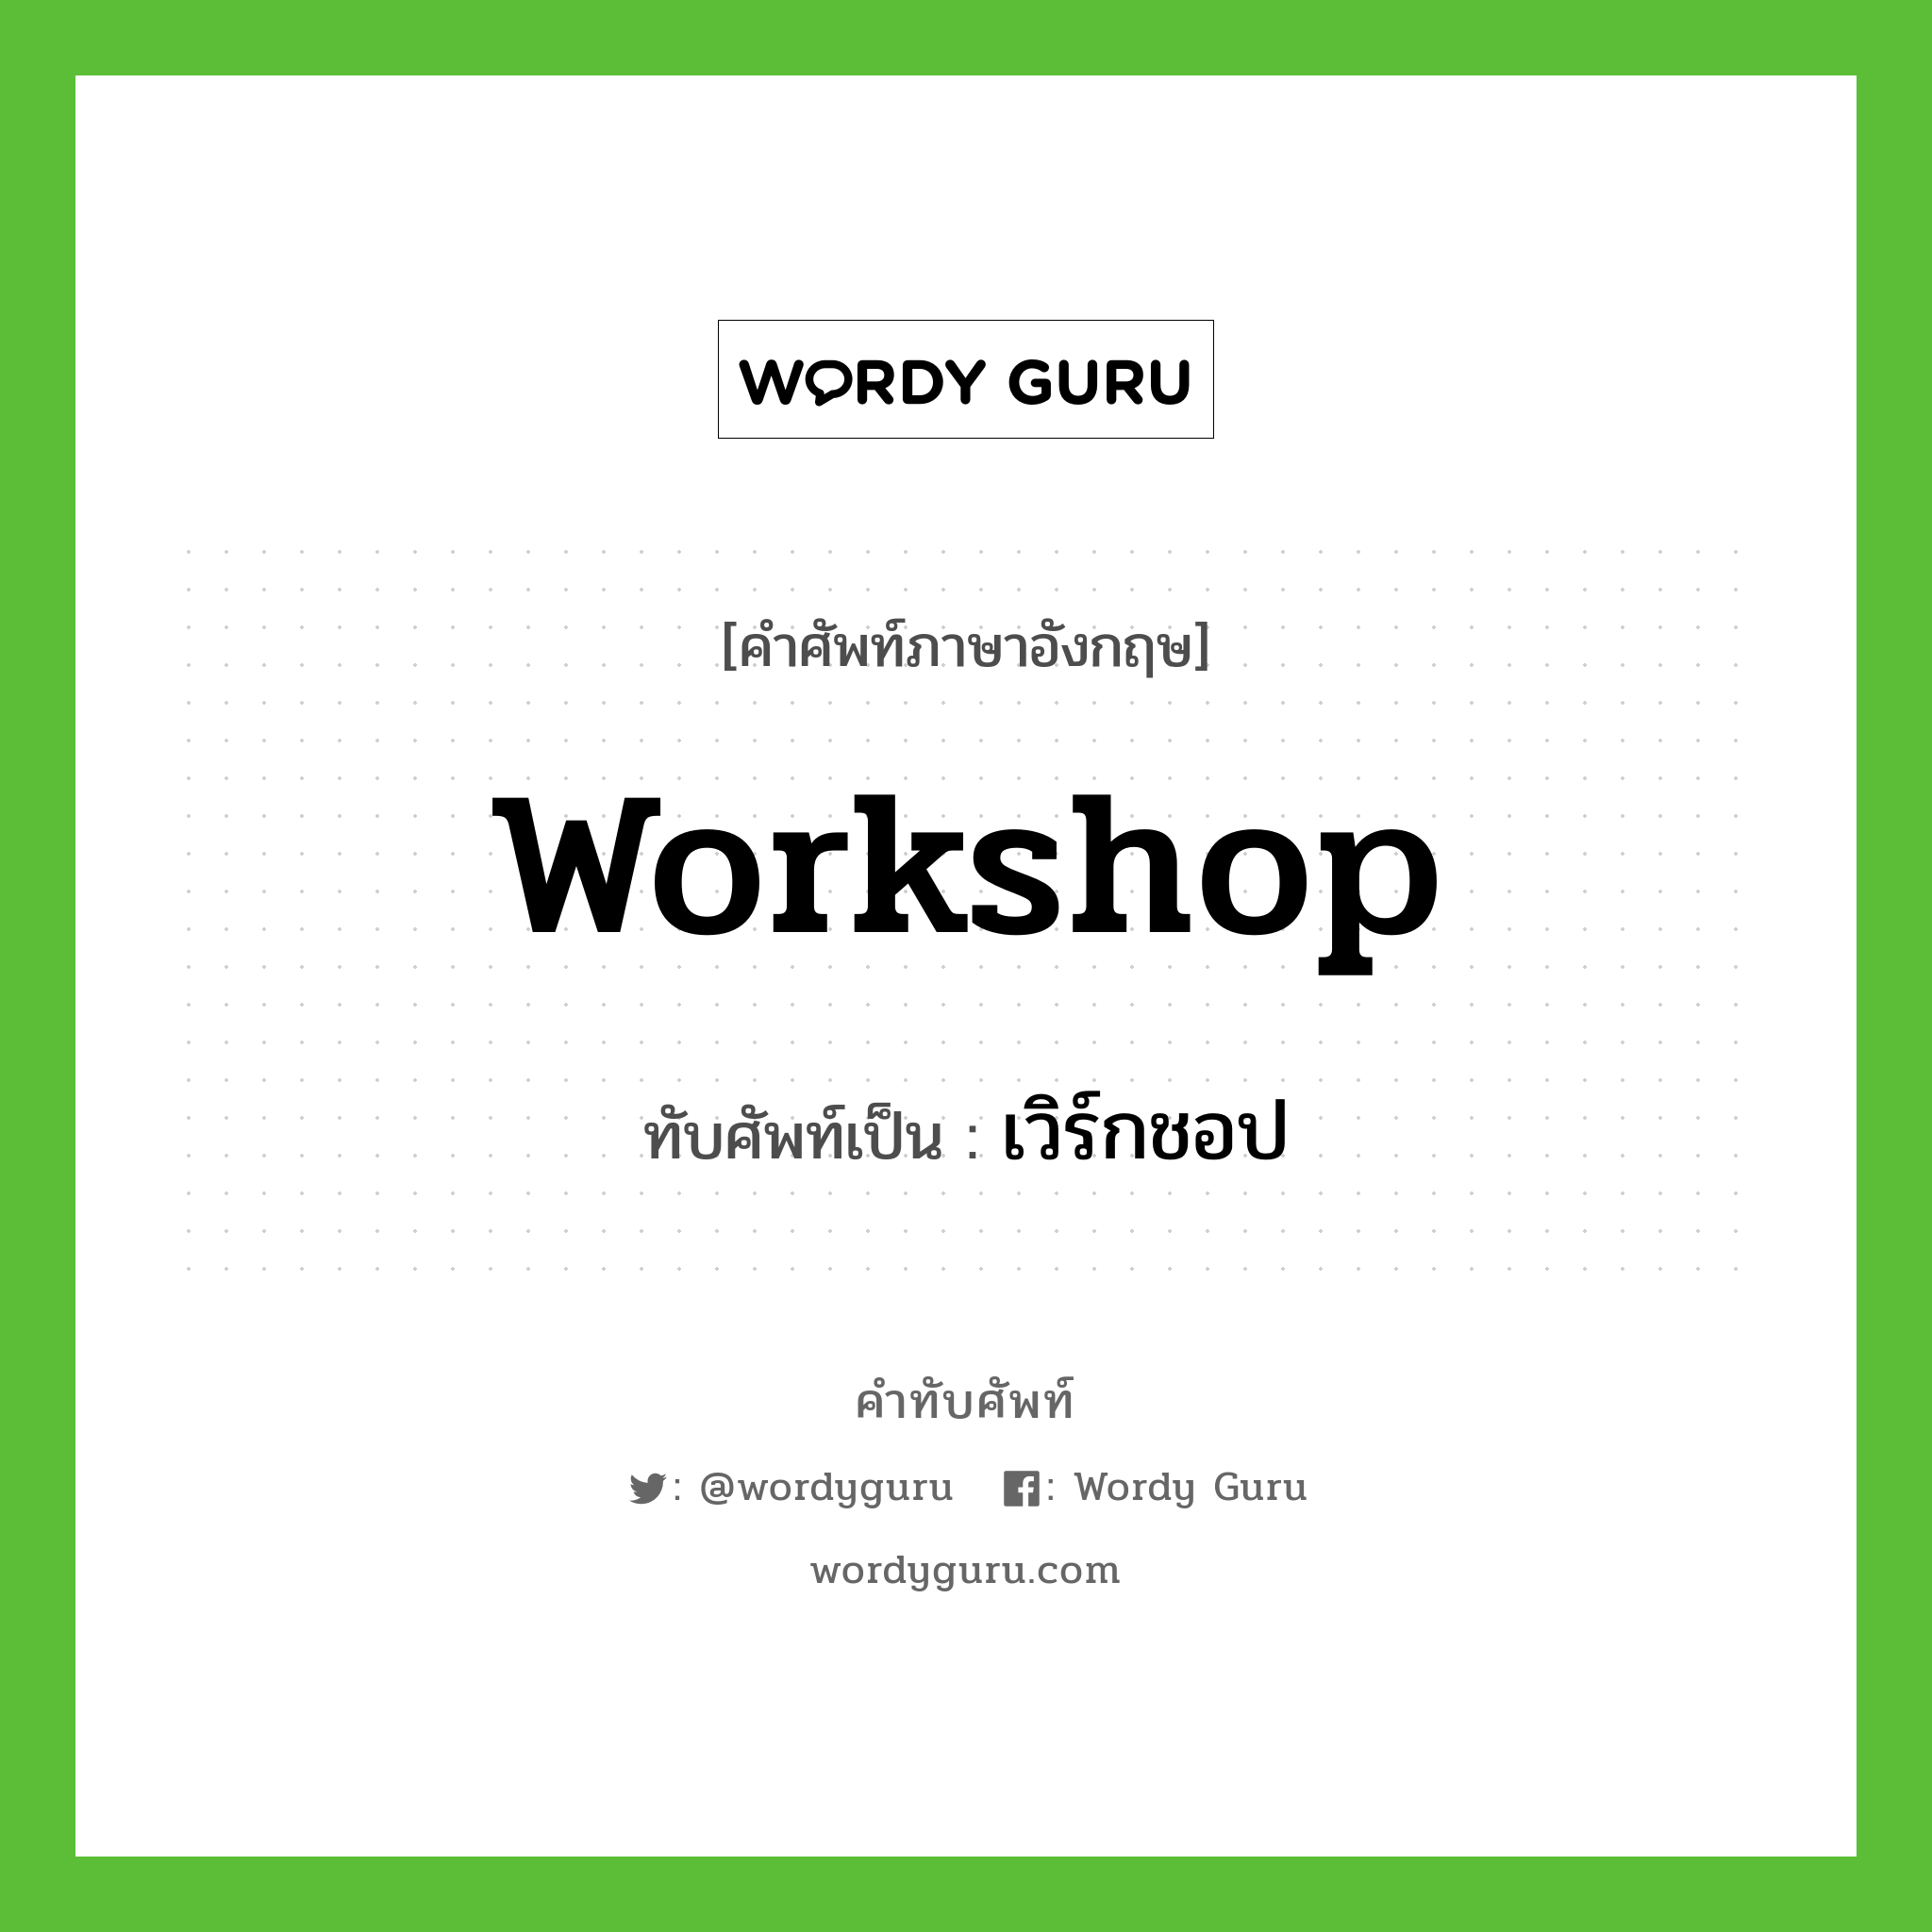 workshop เขียนเป็นคำไทยว่าอะไร?, คำศัพท์ภาษาอังกฤษ workshop ทับศัพท์เป็น เวิร์กชอป